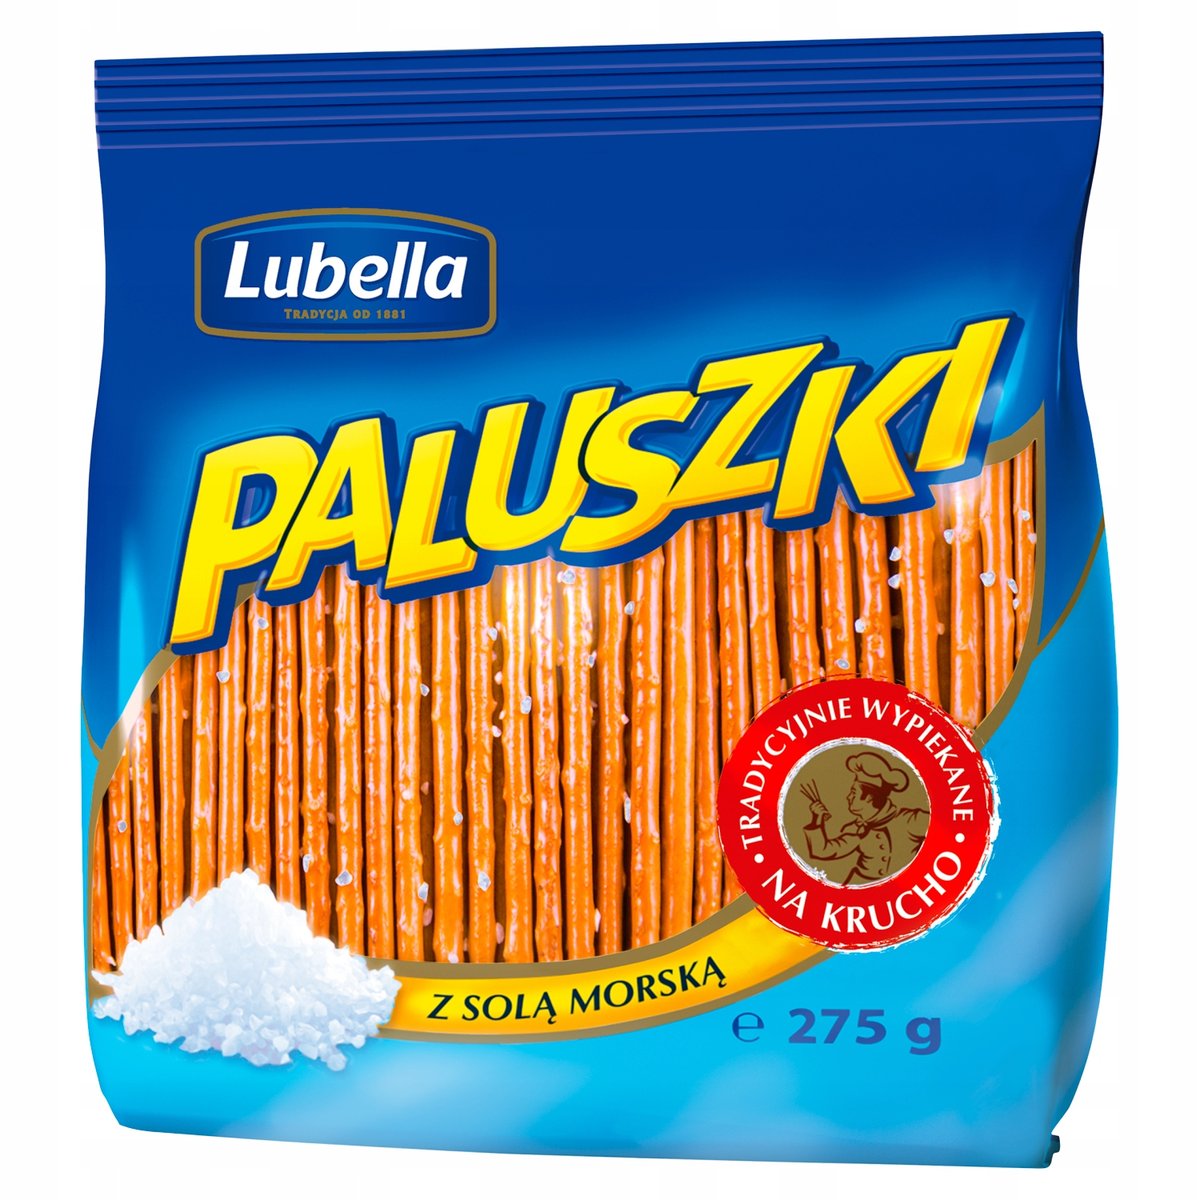 Lubella Paluszki z solą morską 275 g